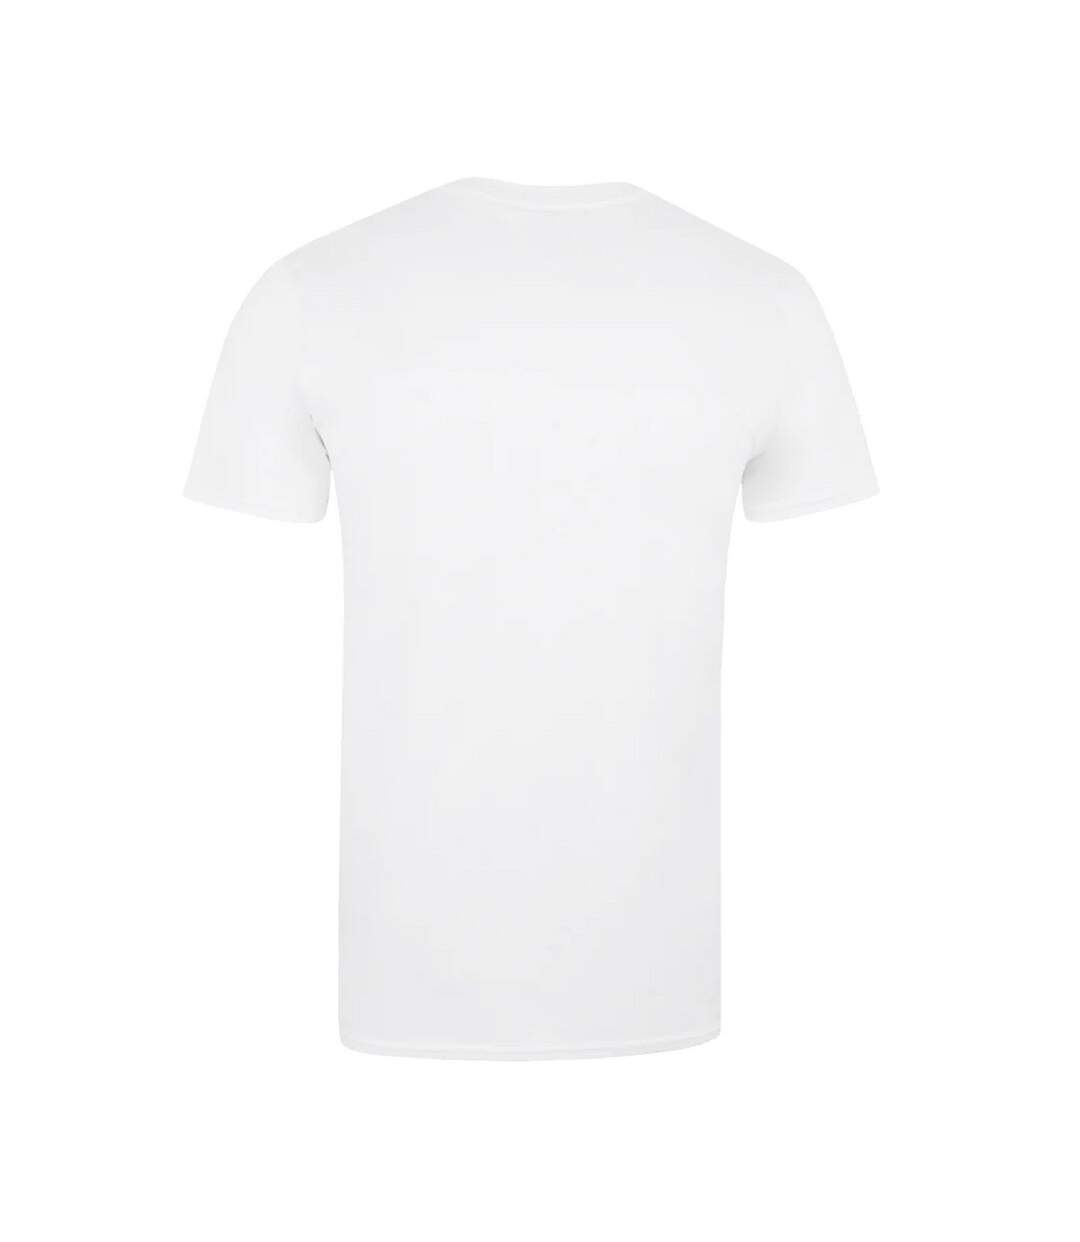 Avengers T-Shirt Hommes Visages (Blanc) - UTTV1227